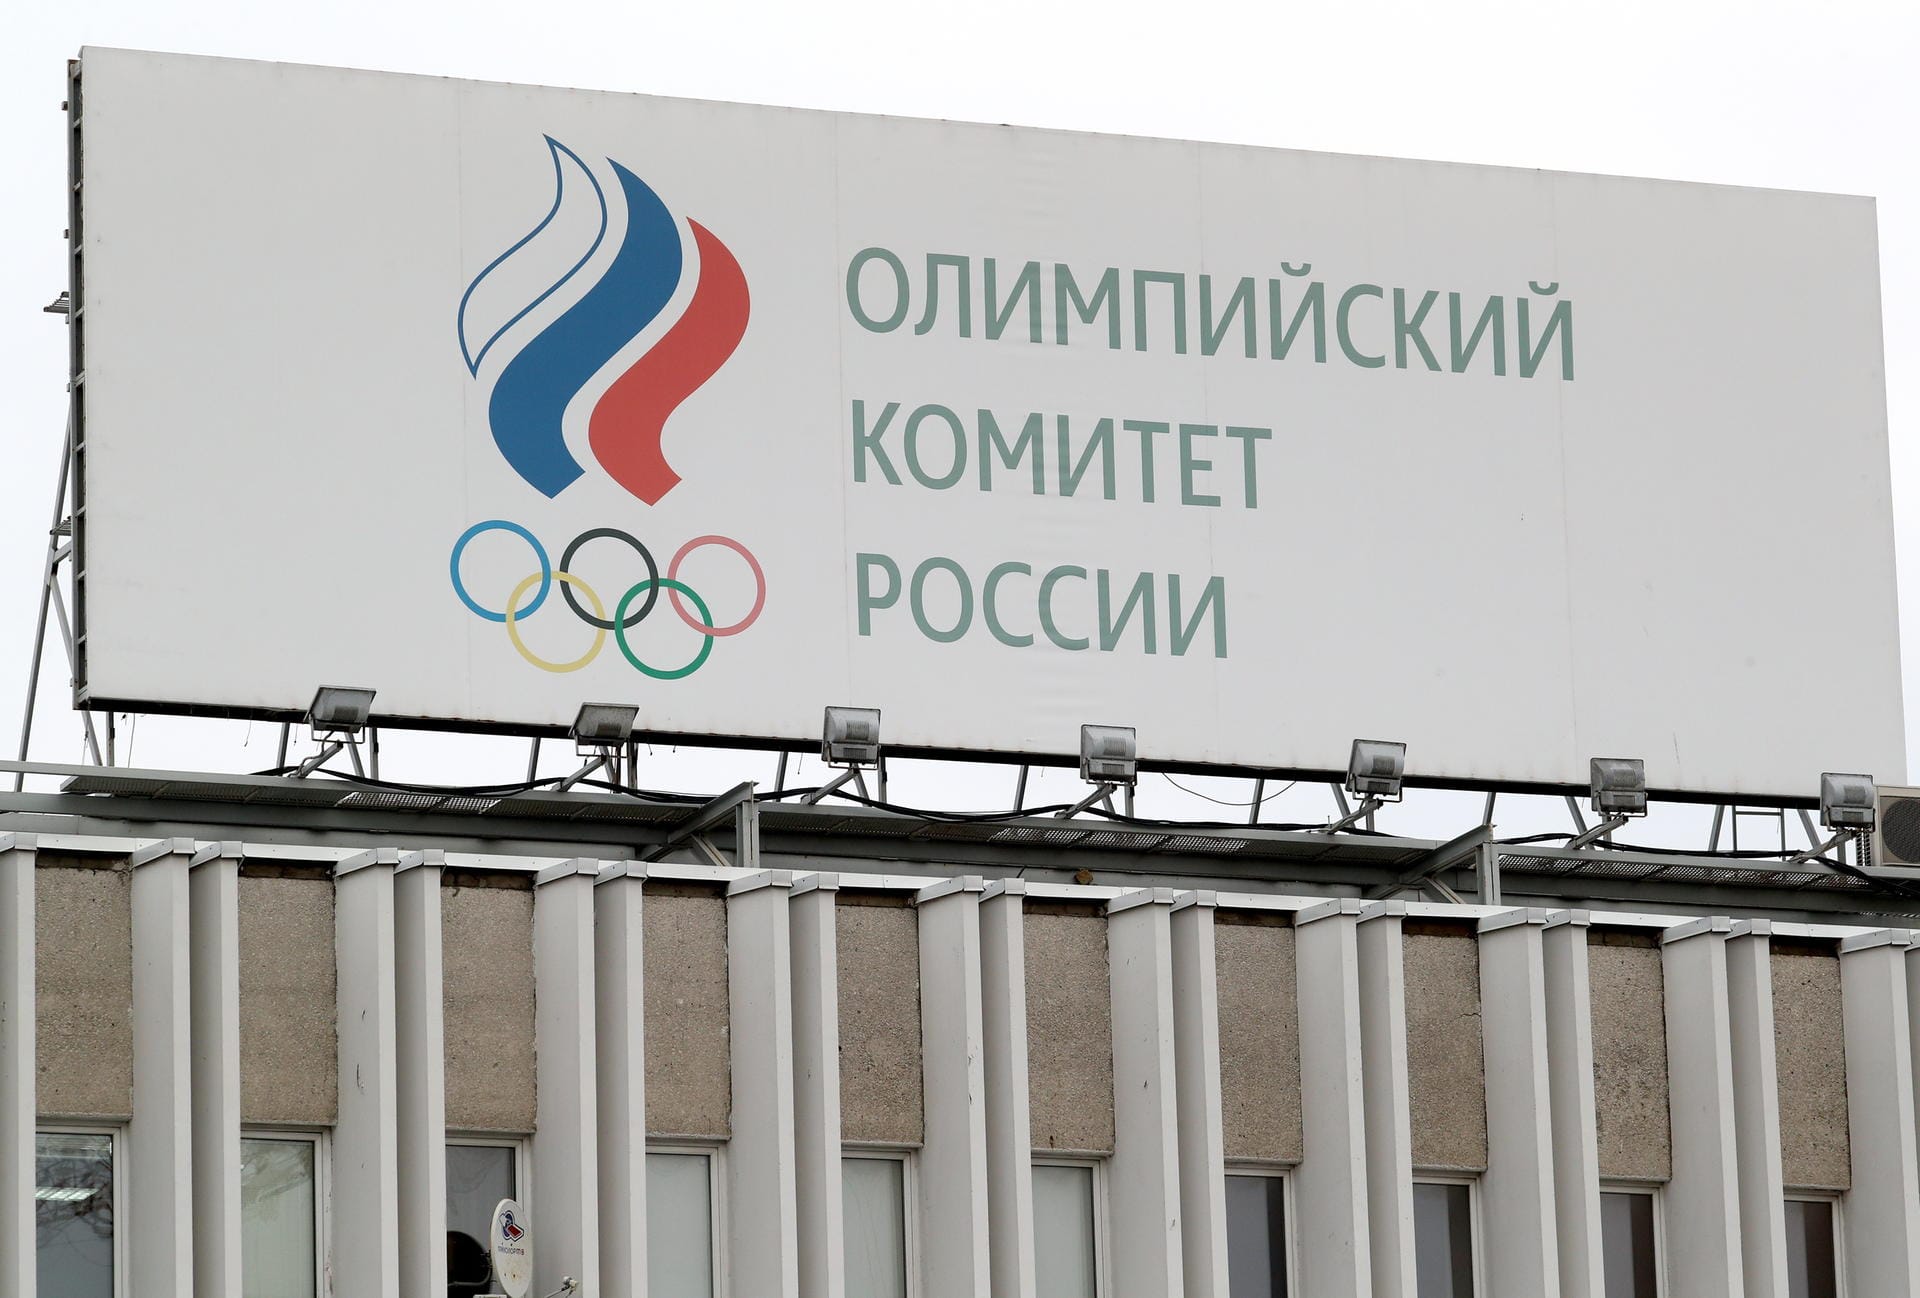 5. Das Land darf während des Vierjahreszeitraumes keine Sportgroßveranstaltungen ausrichten oder sich um WM oder andere wichtige Ereignisse bewerben. Darüber hinaus kann Russland sich nicht für die Olympischen Spiele und Paralympics 2032 als Ausrichter bewerben.